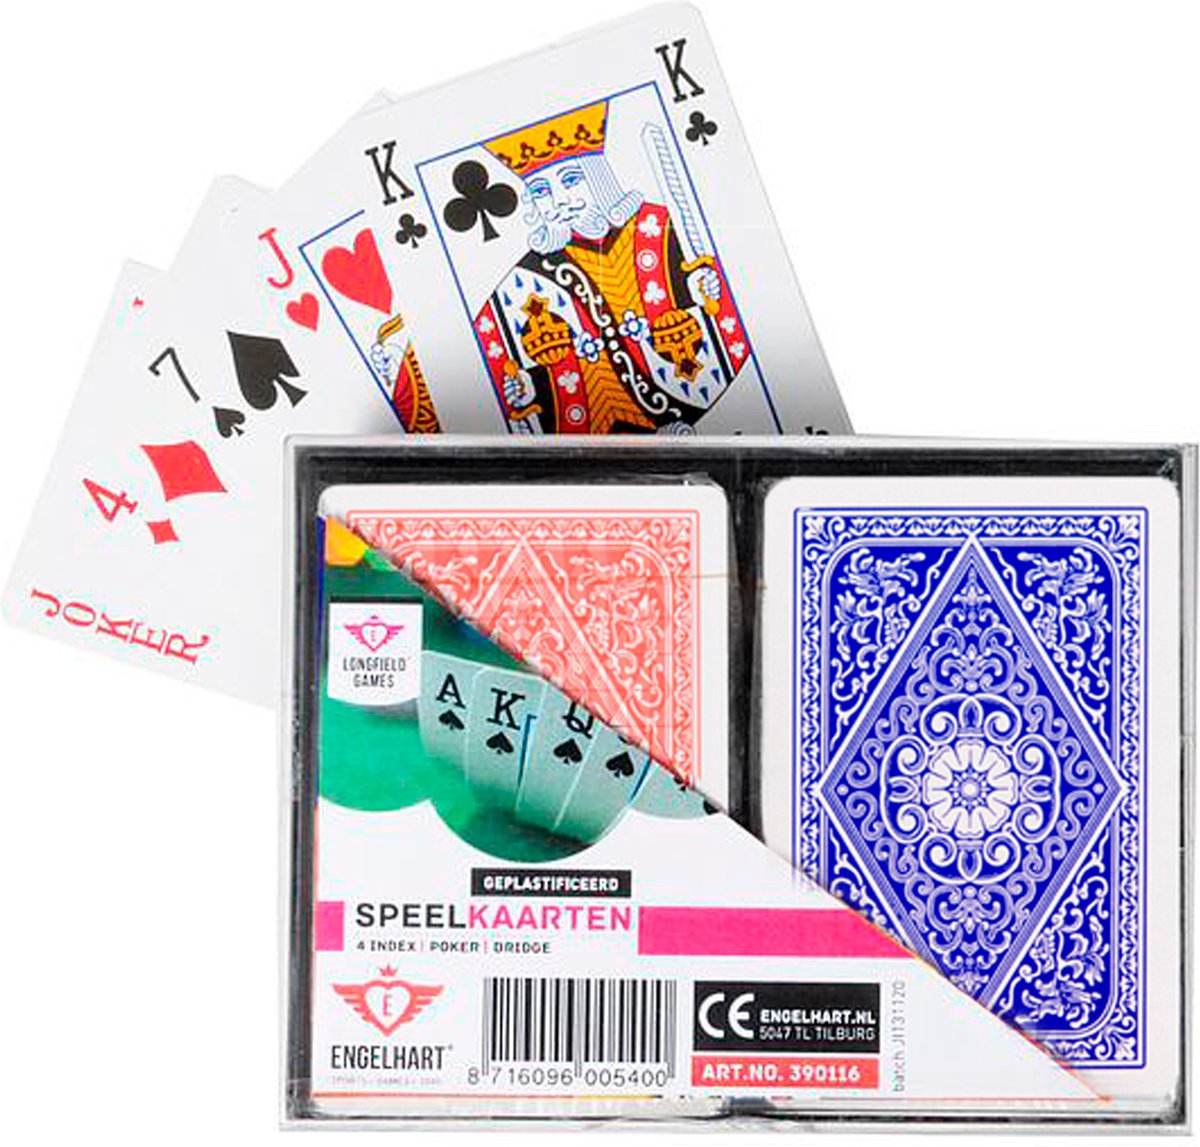 Jeu de cartes Poker dans un étui 54 cartes